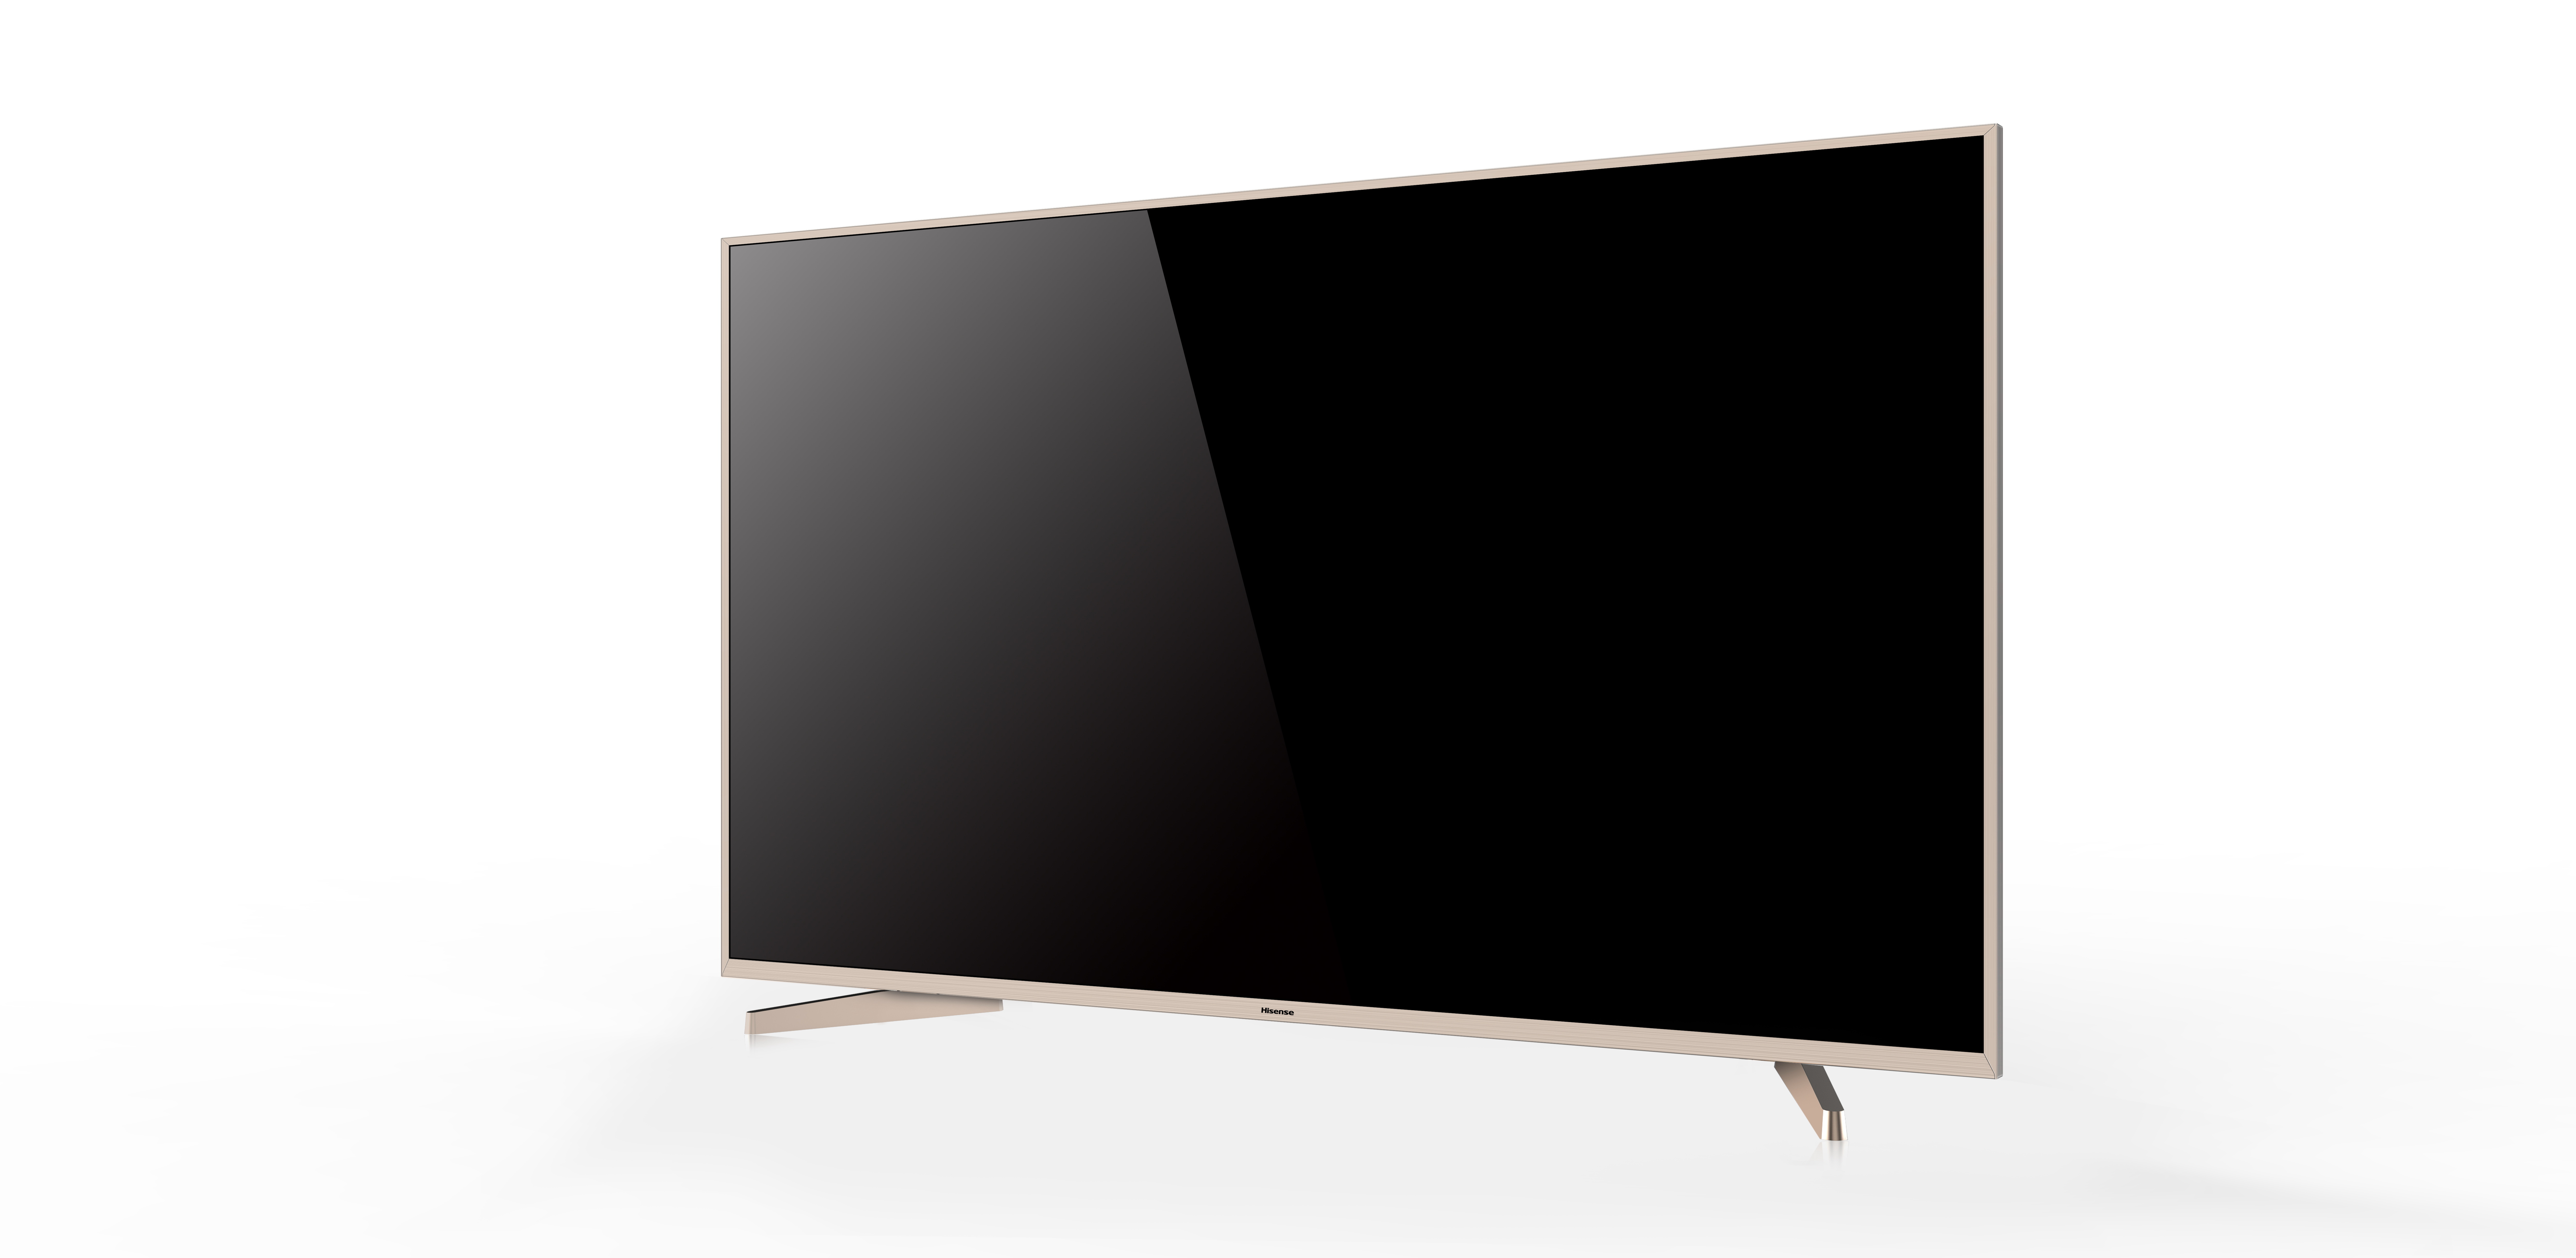 海信(Hisense)LED50M5000U 50英寸 4K超高清智能电视 SUS钢材质金属极窄边框 2GB运行内存高清大图